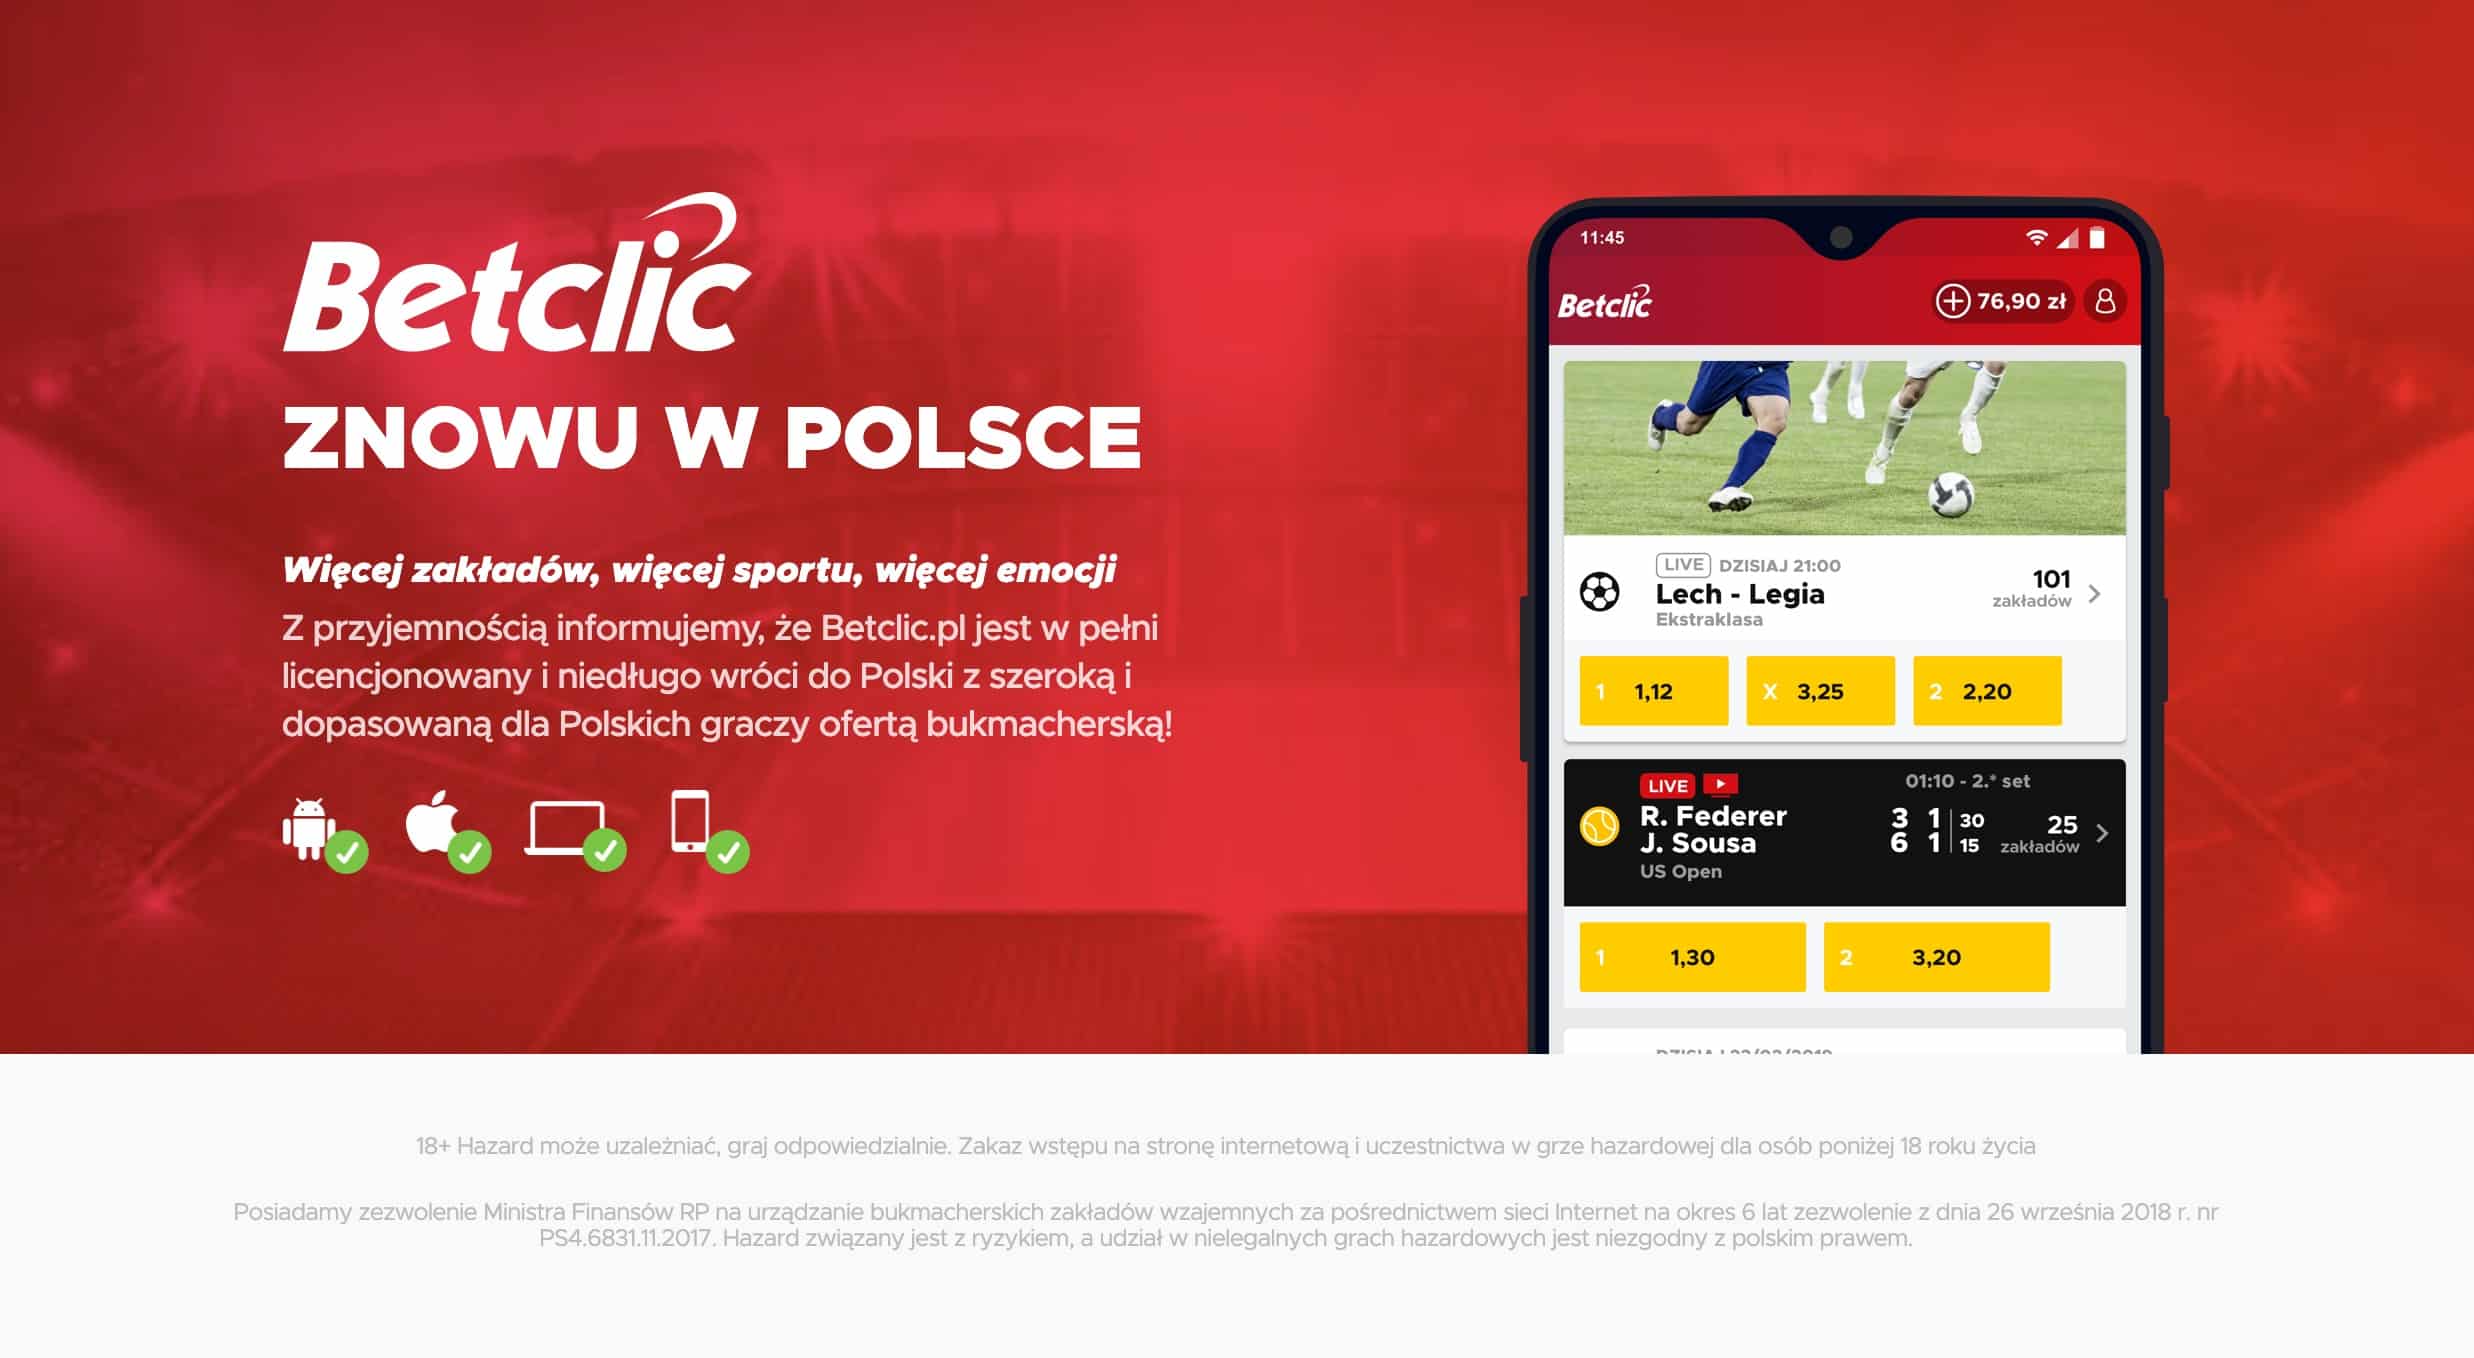 BetClic Polska nie wystartuje w czerwcu. Przesunięty start bukmachera!